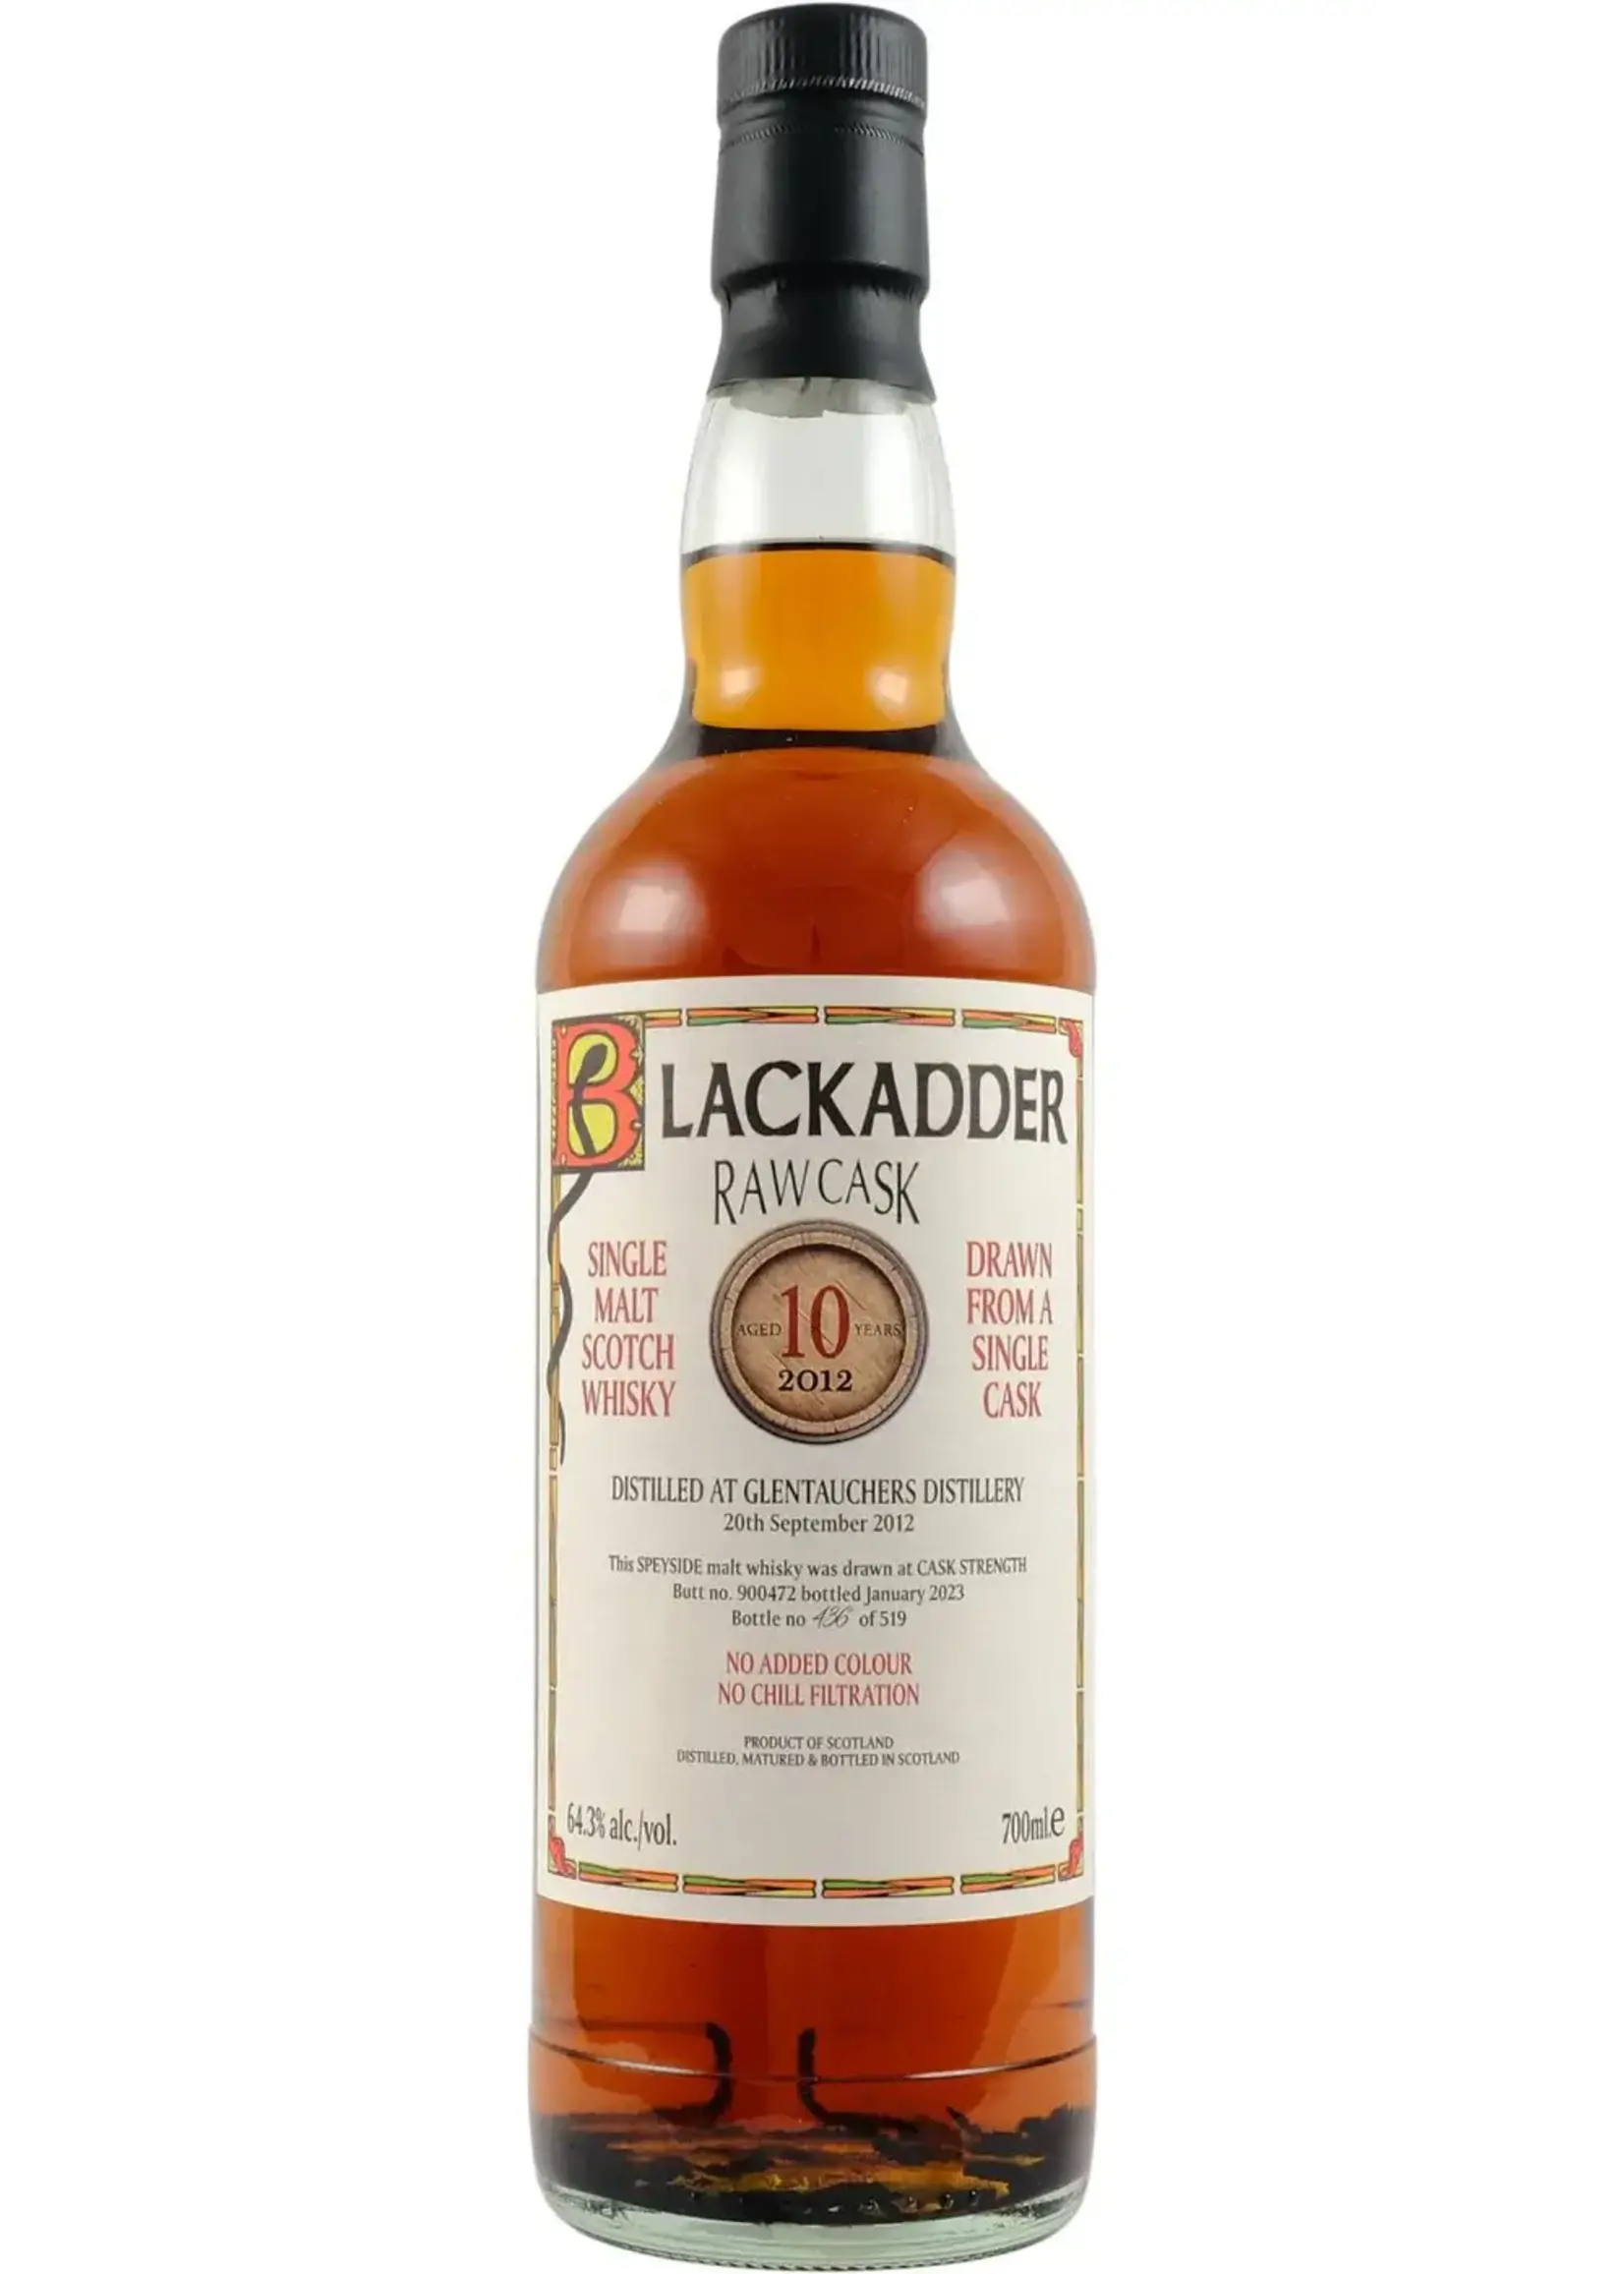 Blackadder Blackadder / Glentauchers 10 Year Distilled 2012 Sherry Butt no. 900472 Single Cask Single Malt Scotch Whisky 64.3% abv 700mL